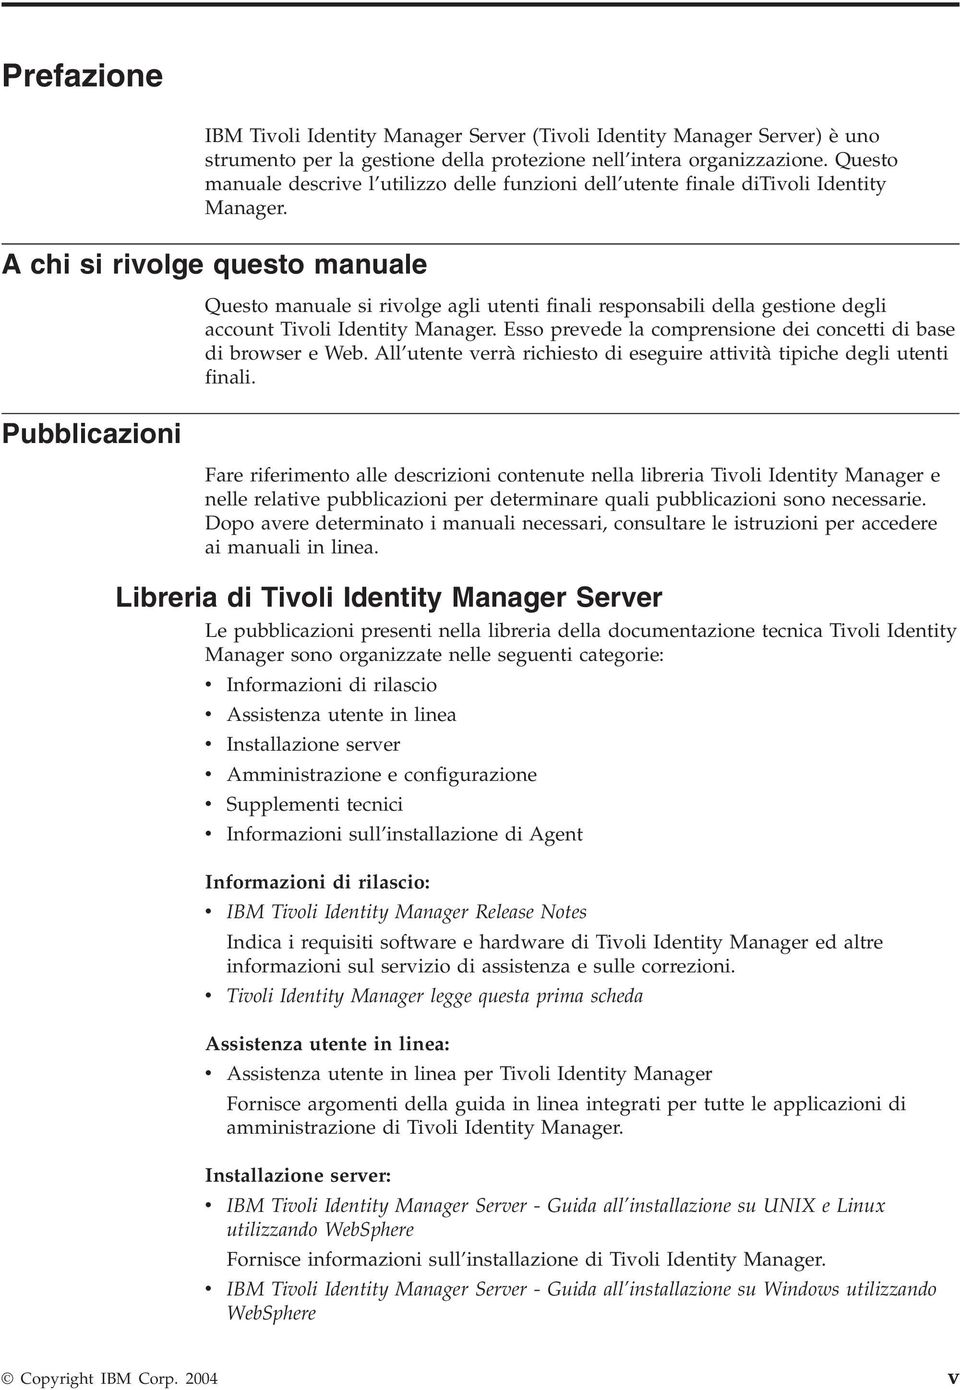 A chi si riolge questo manuale Pubblicazioni Questo manuale si riolge agli utenti finali responsabili della gestione degli account Tioli Identity Manager.